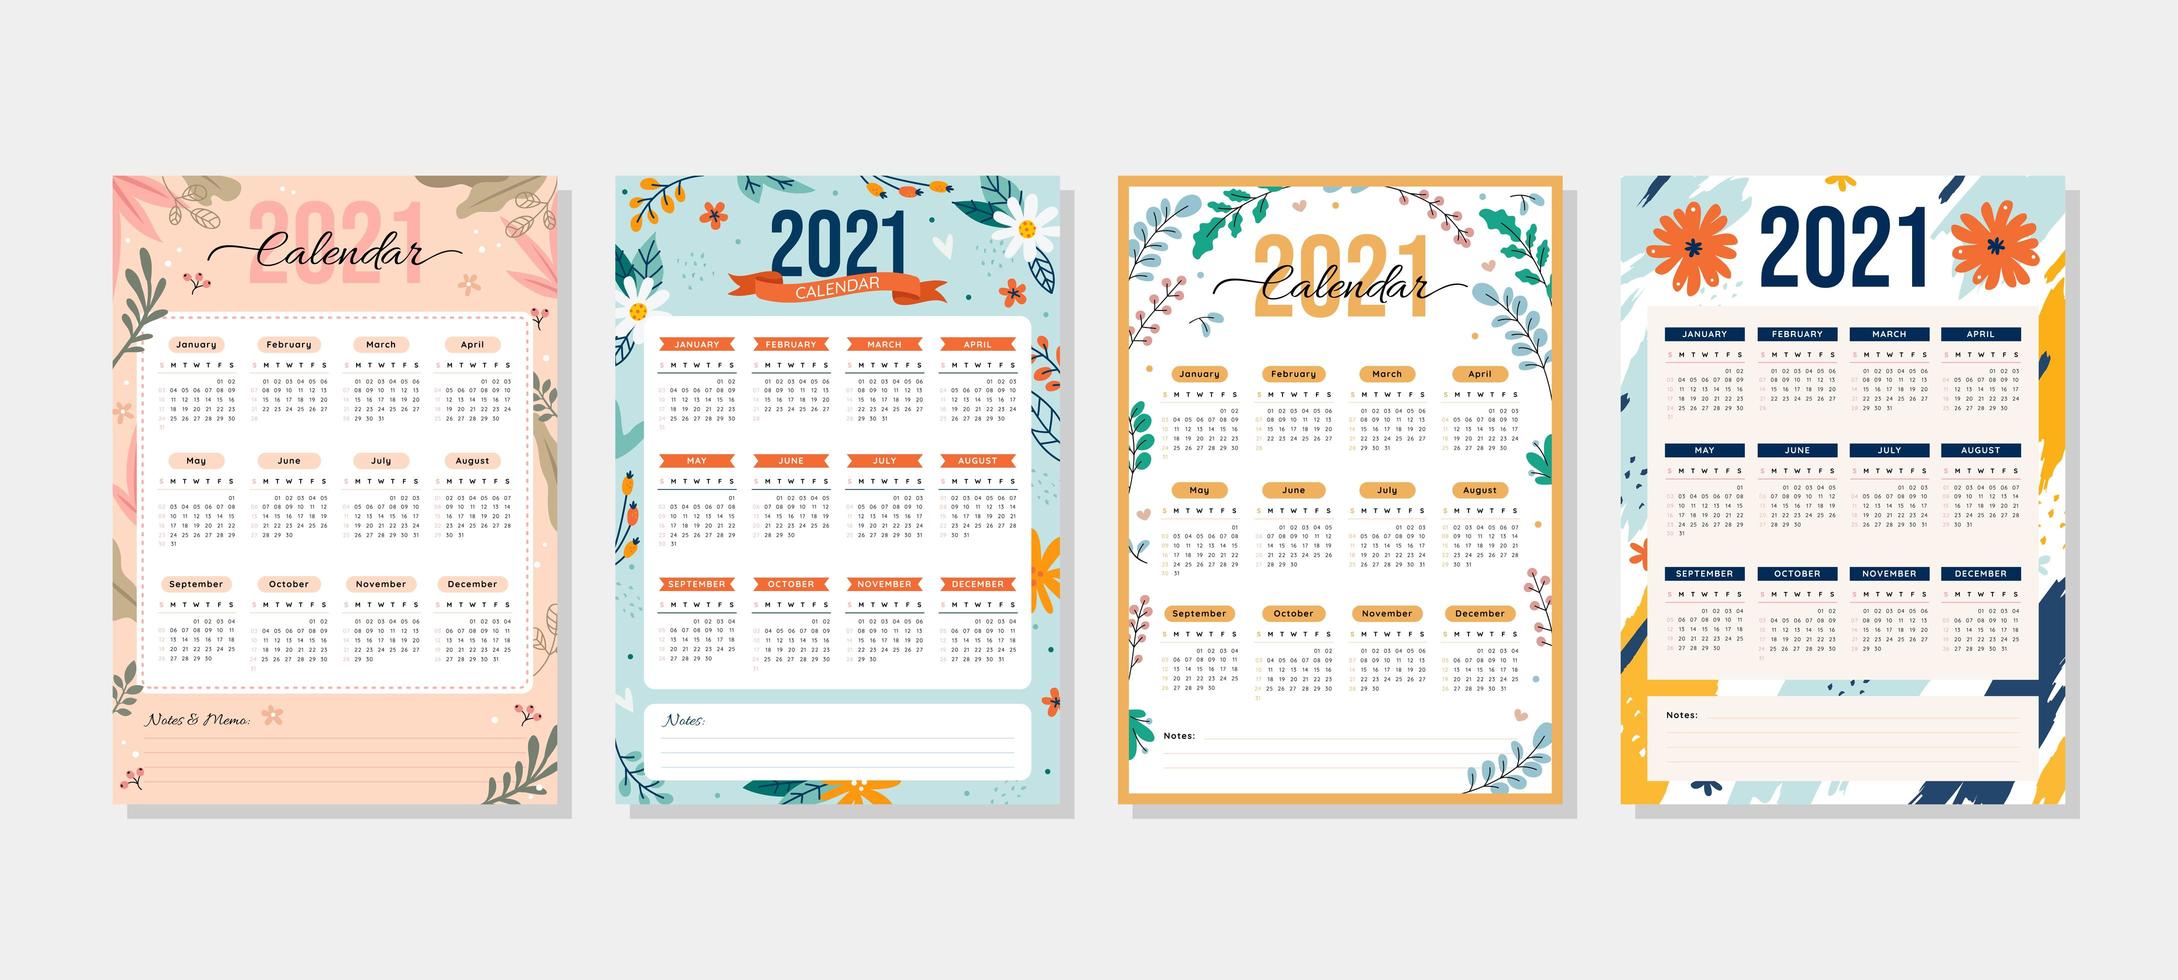 Calendario 2021 con tema floral vector